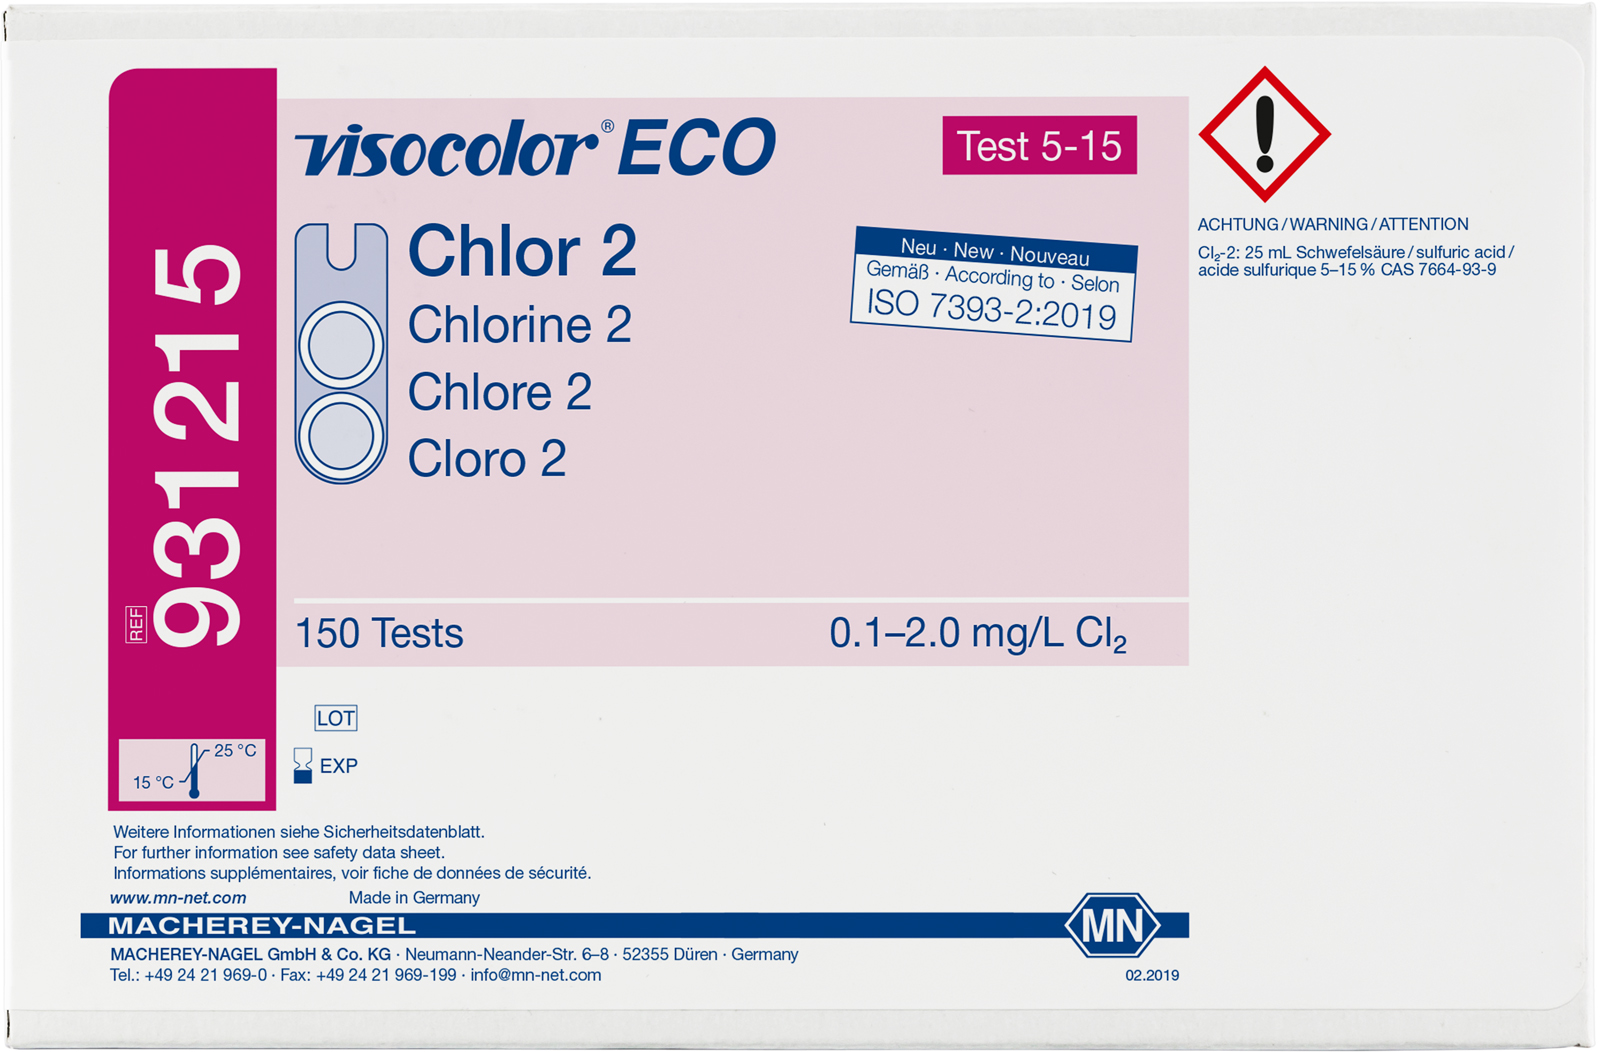 VISOCOLOR ECO Chlor 2, frei + gesamt